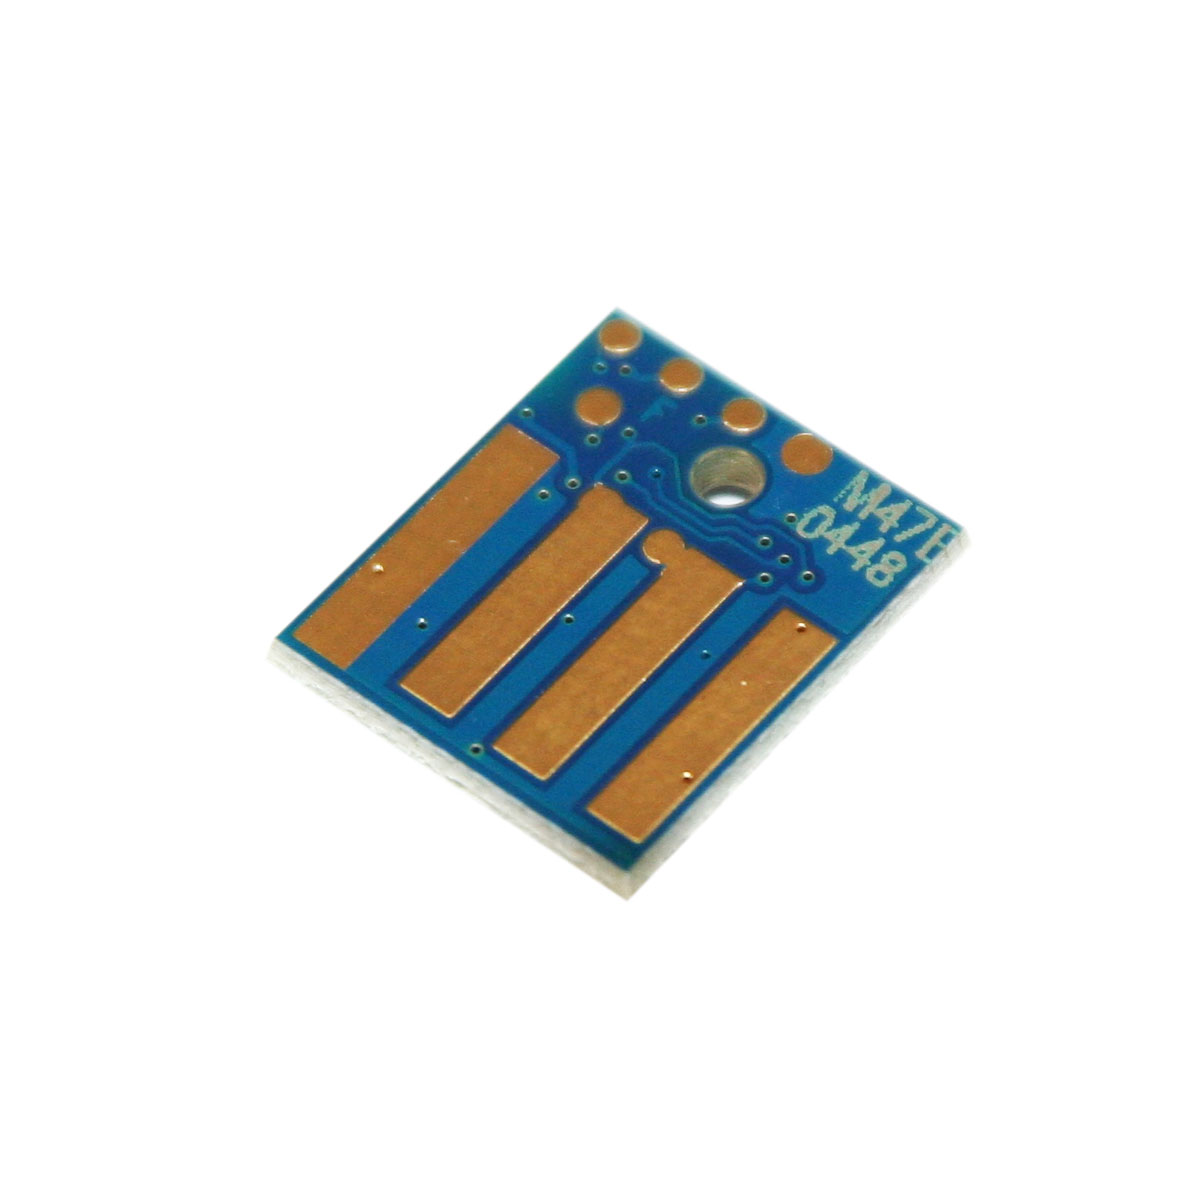 Chip zliczający Minolta Bizhub 4700P